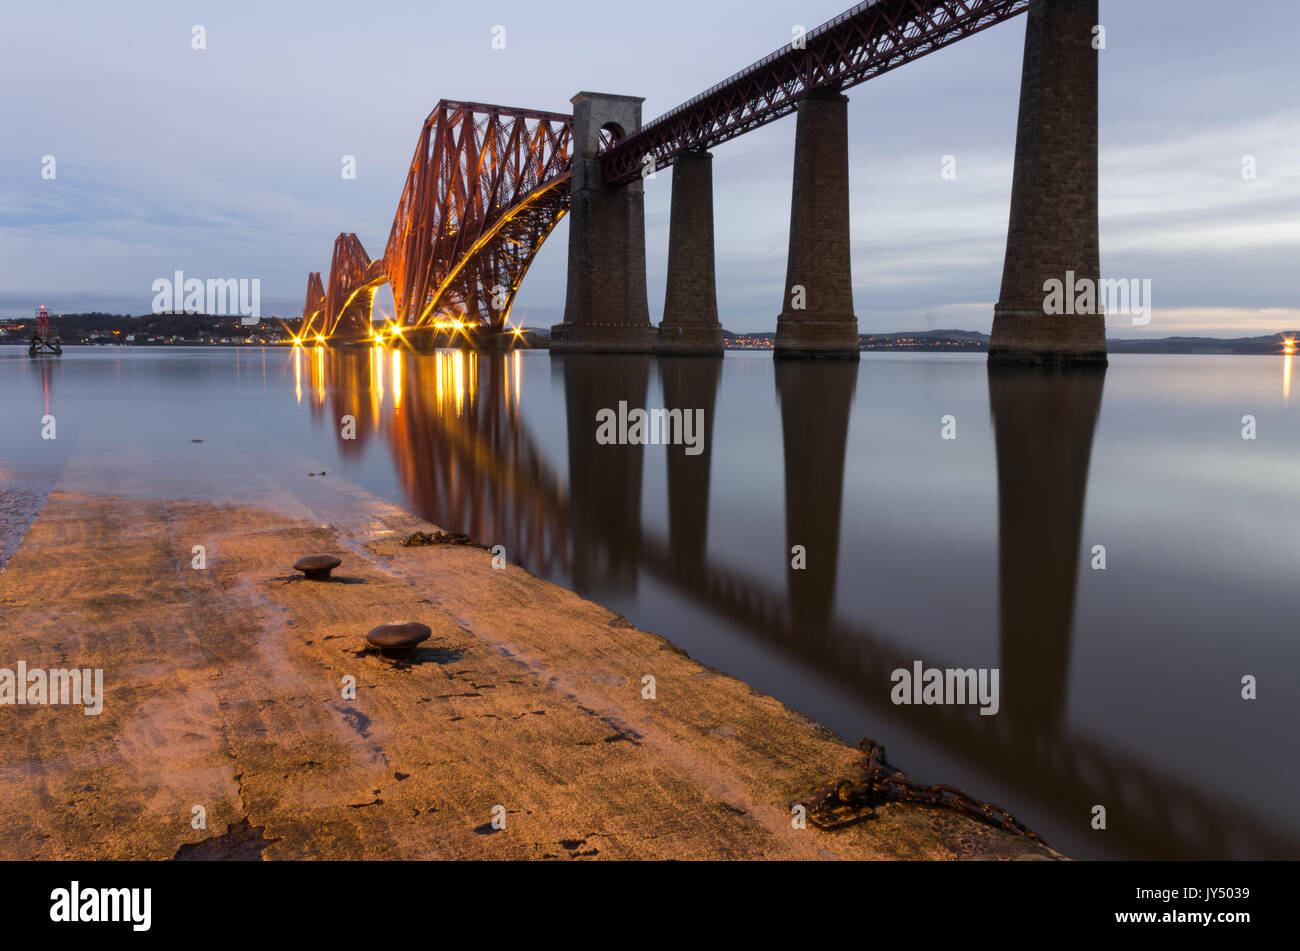 Amanecer en el puente ferroviario de Forth, South Queensferry, Firth of Forth, Escocia Foto de stock